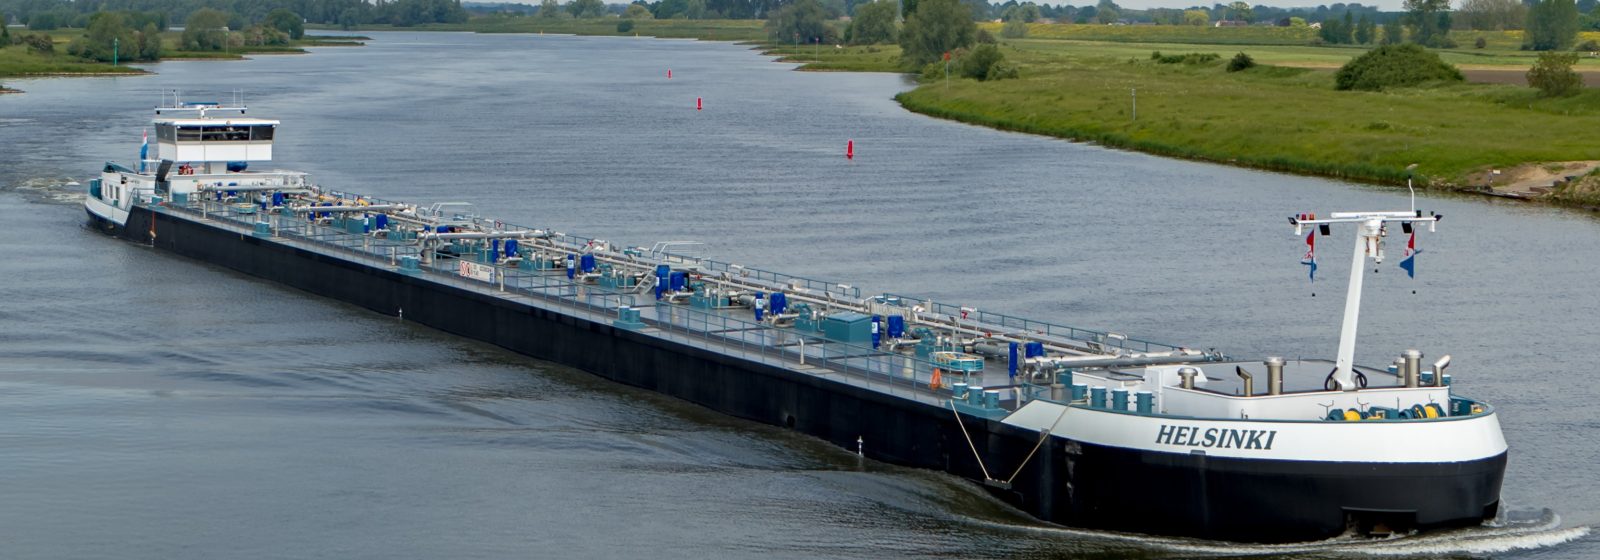 De nieuwe elektrisch aangedreven tanker 'Helsinki' van Victrol